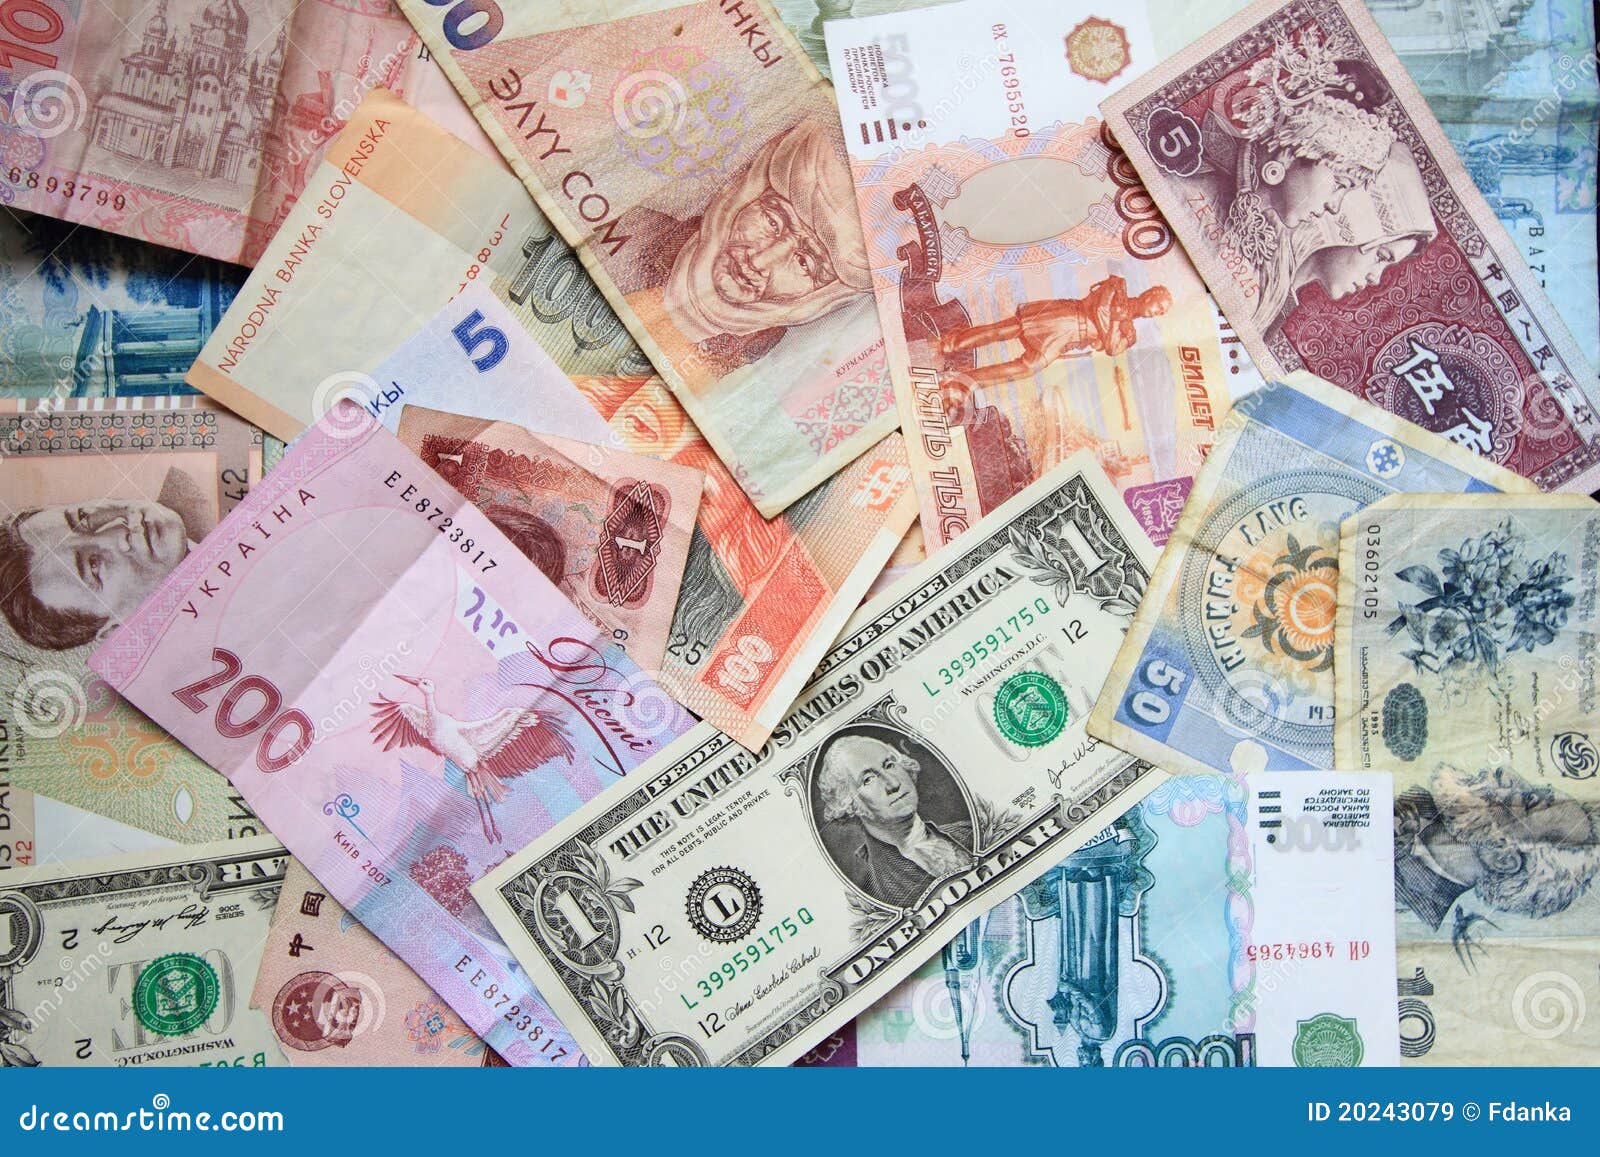 Рубли в разных странах. Купюры разных стран. Иностранные деньги. Деньги разные. Иностранная валюта.